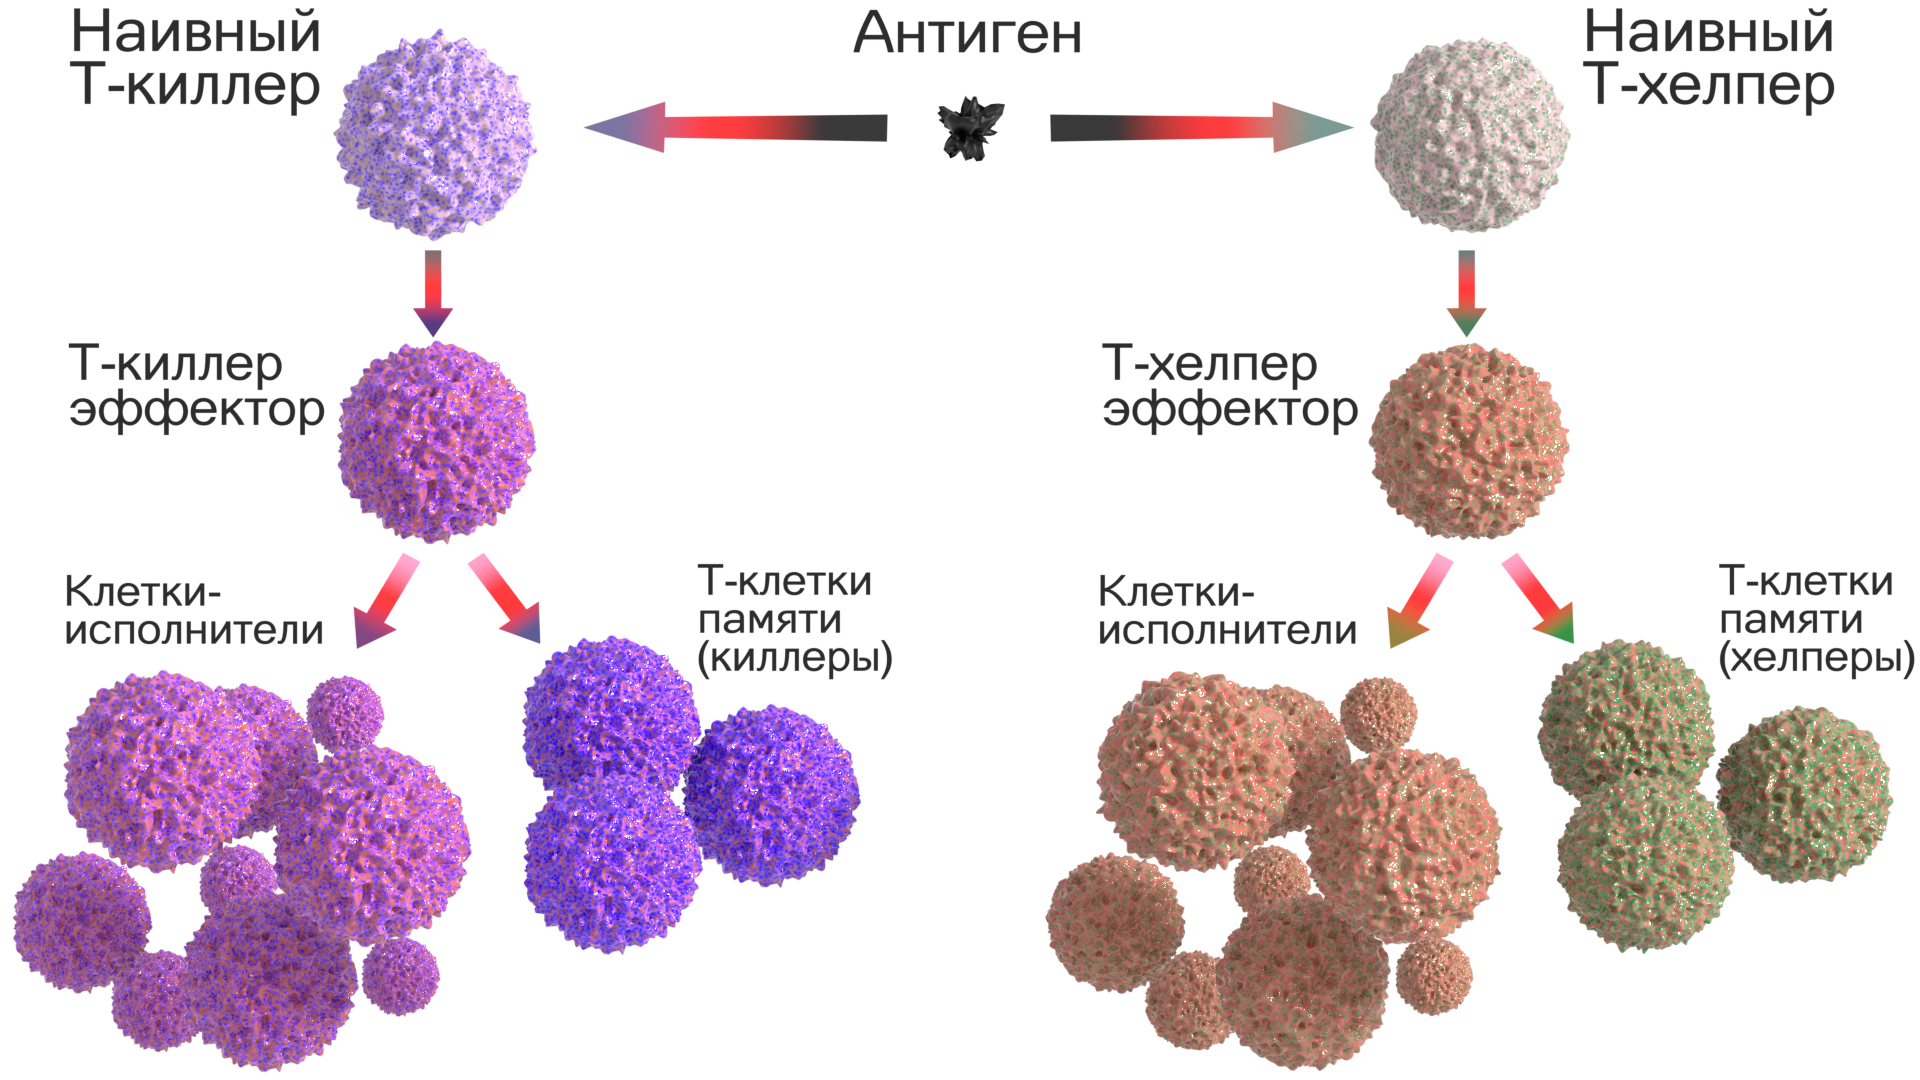 Лимфоциты какой иммунитет. Клетки памяти т-лимфоцитов. Клетки иммунной системы т-киллеры. Т лимфоциты т киллеры т хелперы т супрессоры. Т клетки иммунной памяти функция.